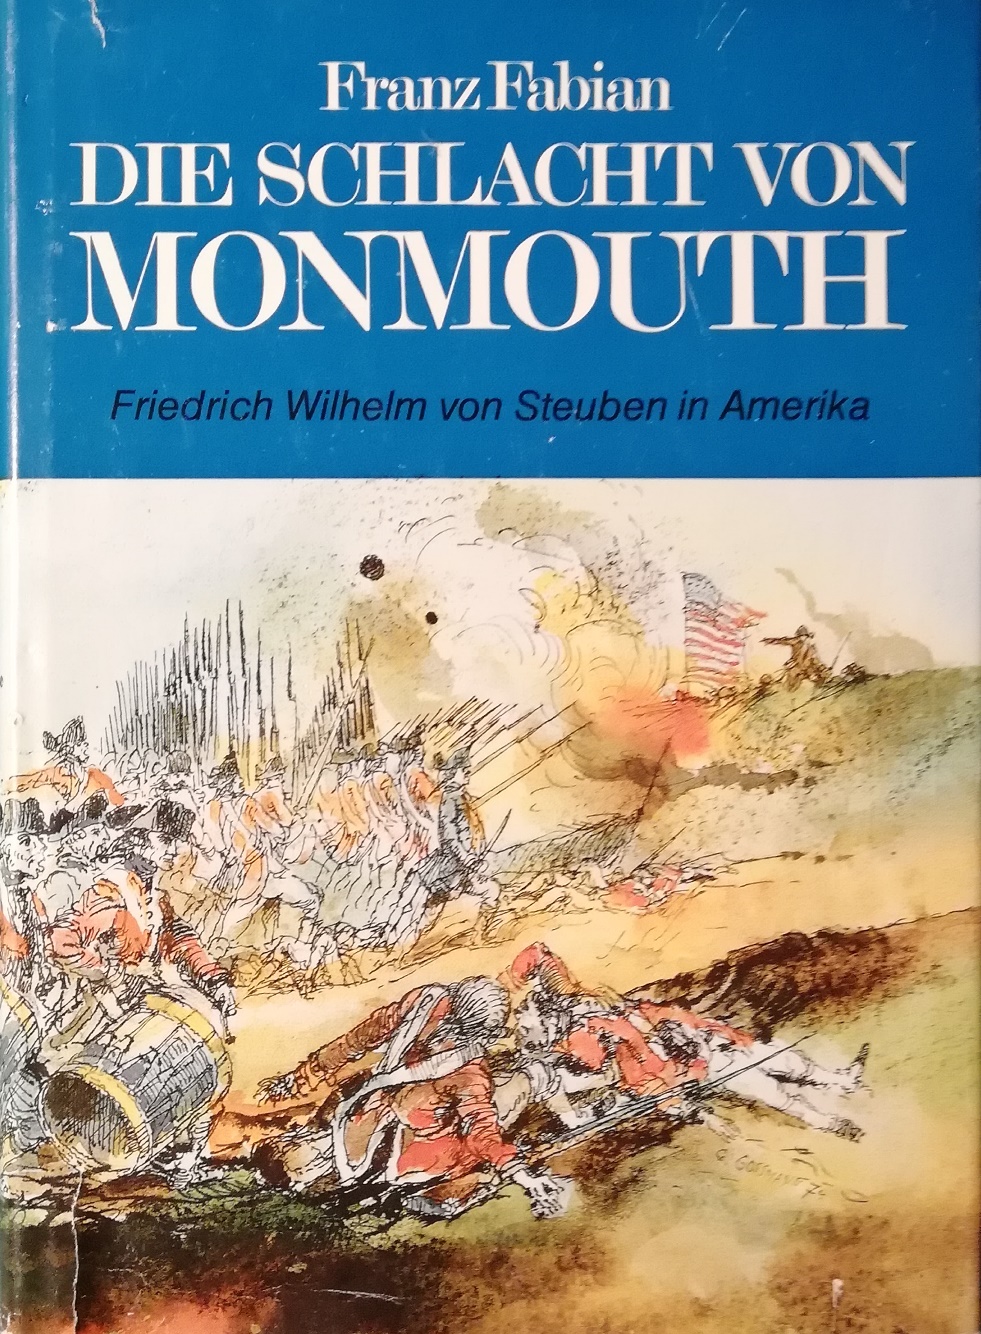 Die Schlacht von Monmouth. Friedrich Wilhelm von Steuben in Amerika - Fabian, Franz